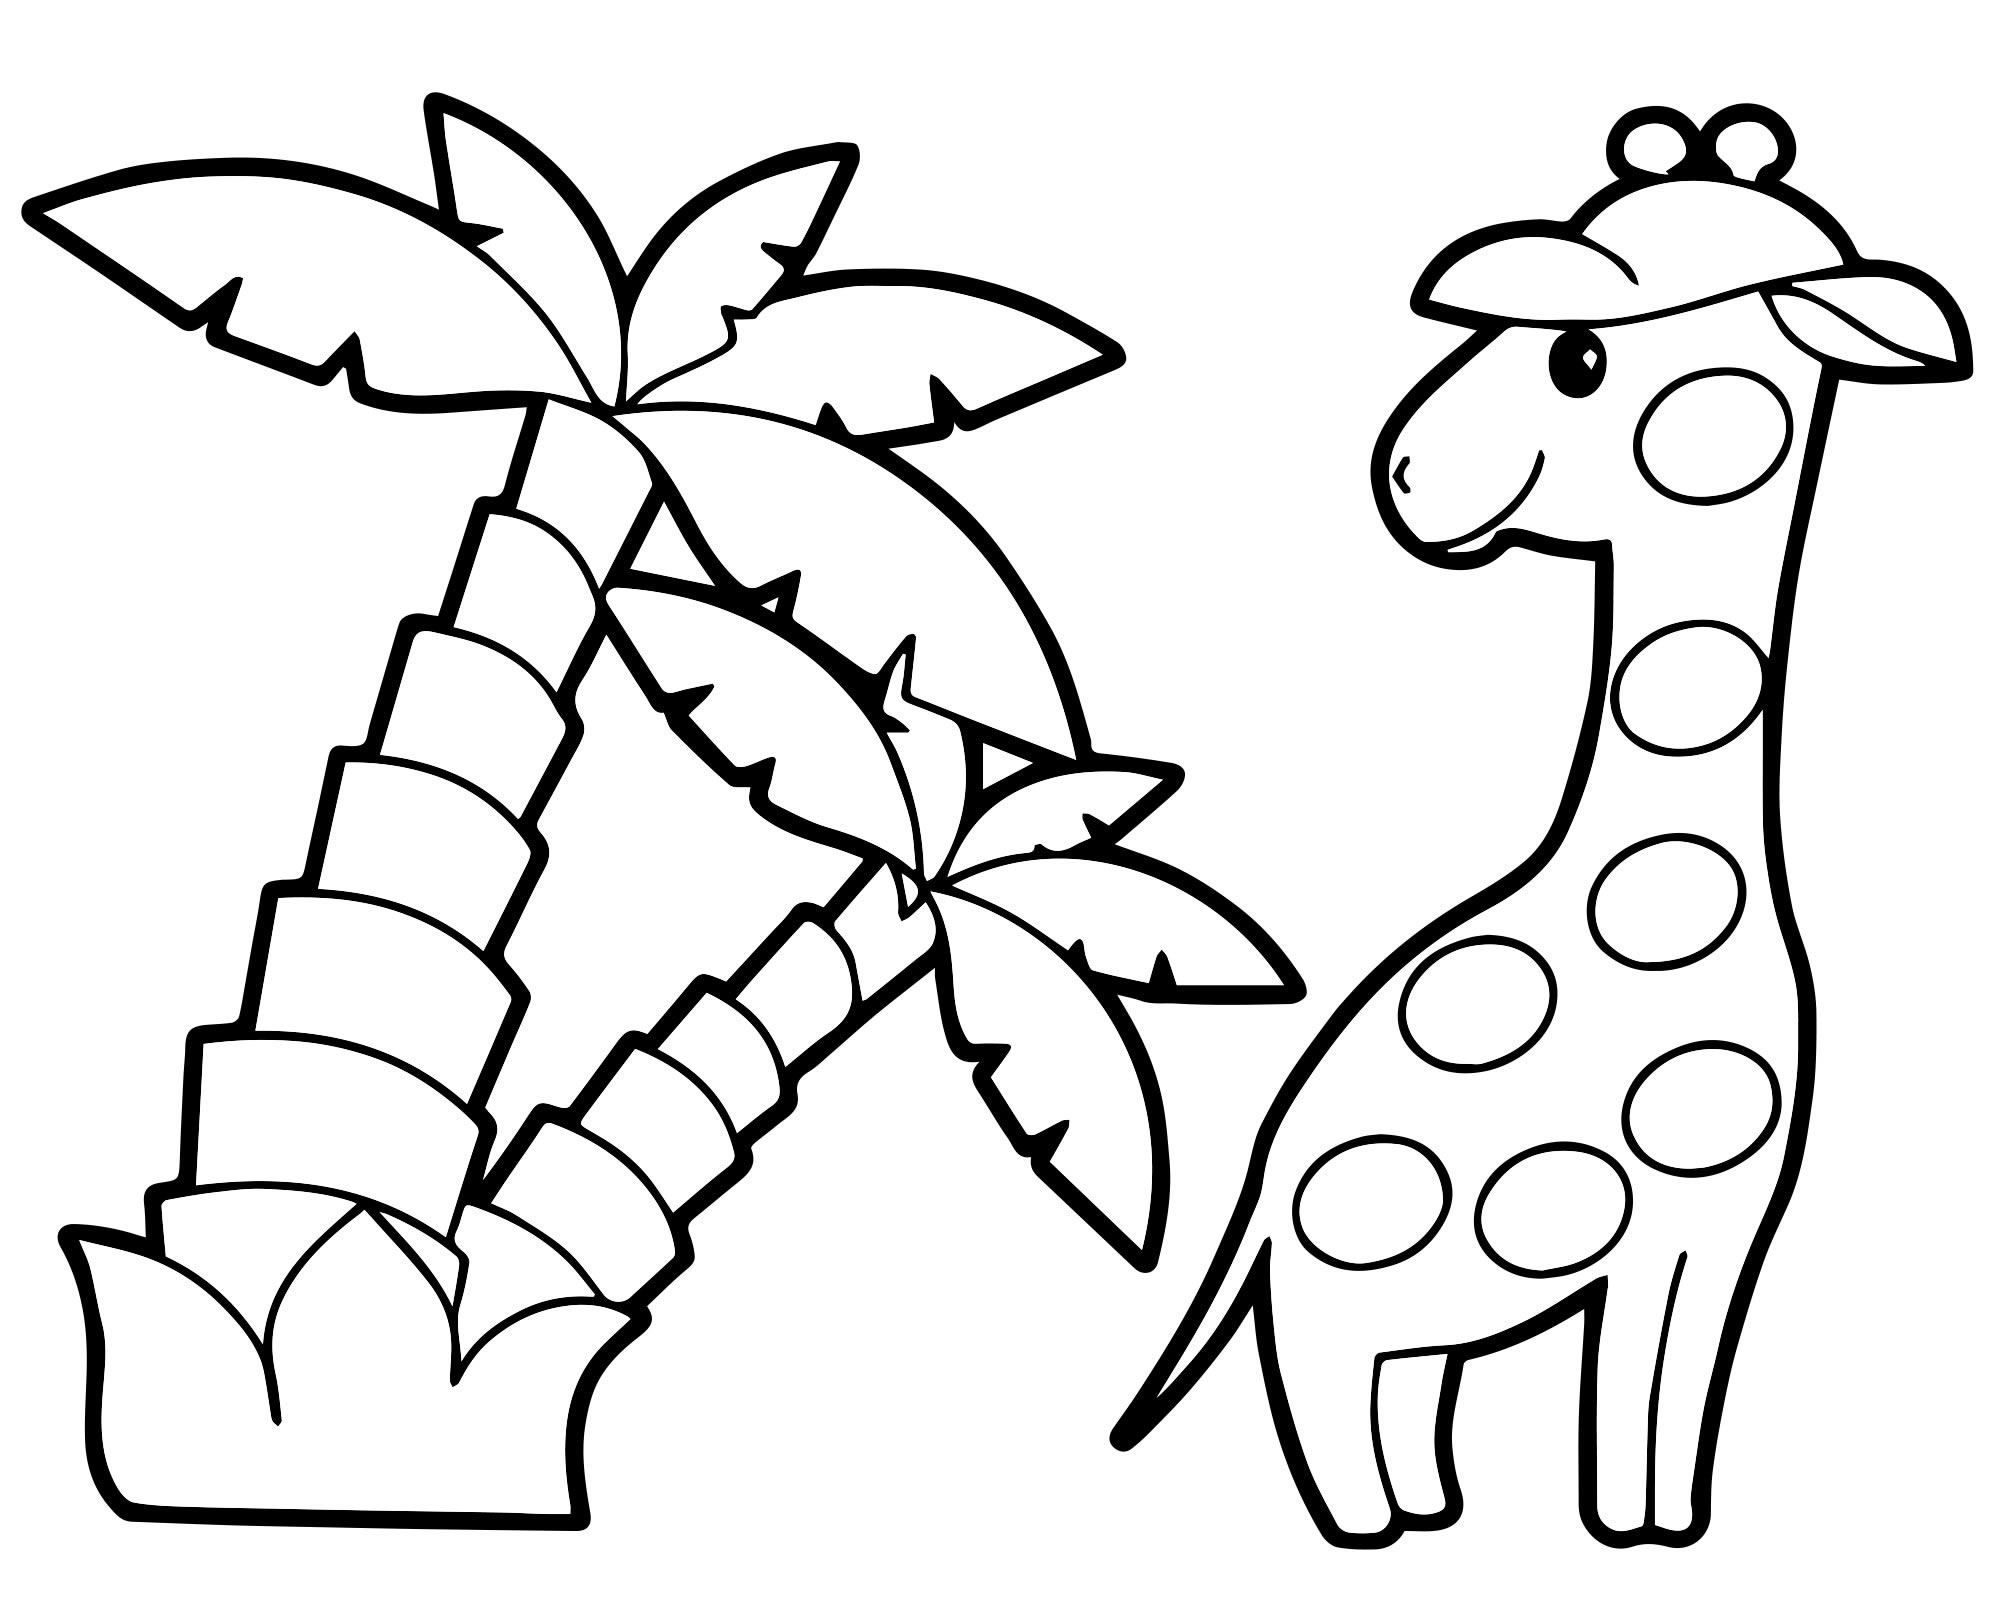 Идеи на тему «Жираф» (20) | жираф, поделки, украшения на тему джунглей